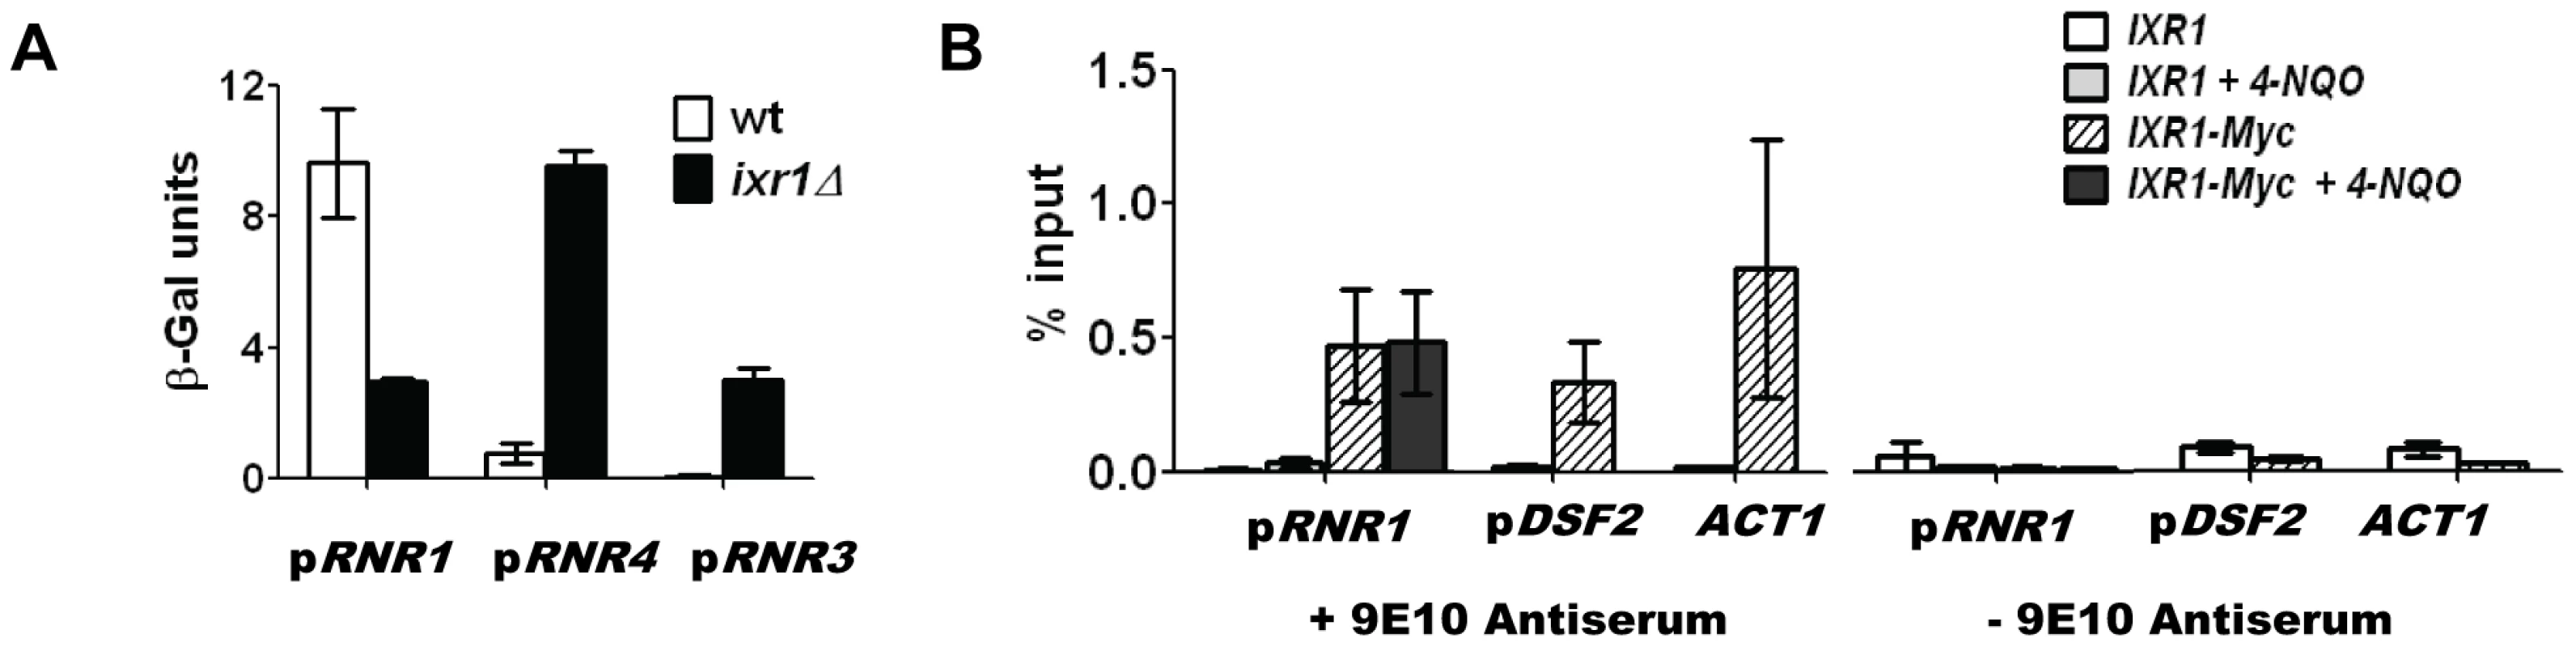 Ixr1 regulates <i>RNR1</i> promoter activity.